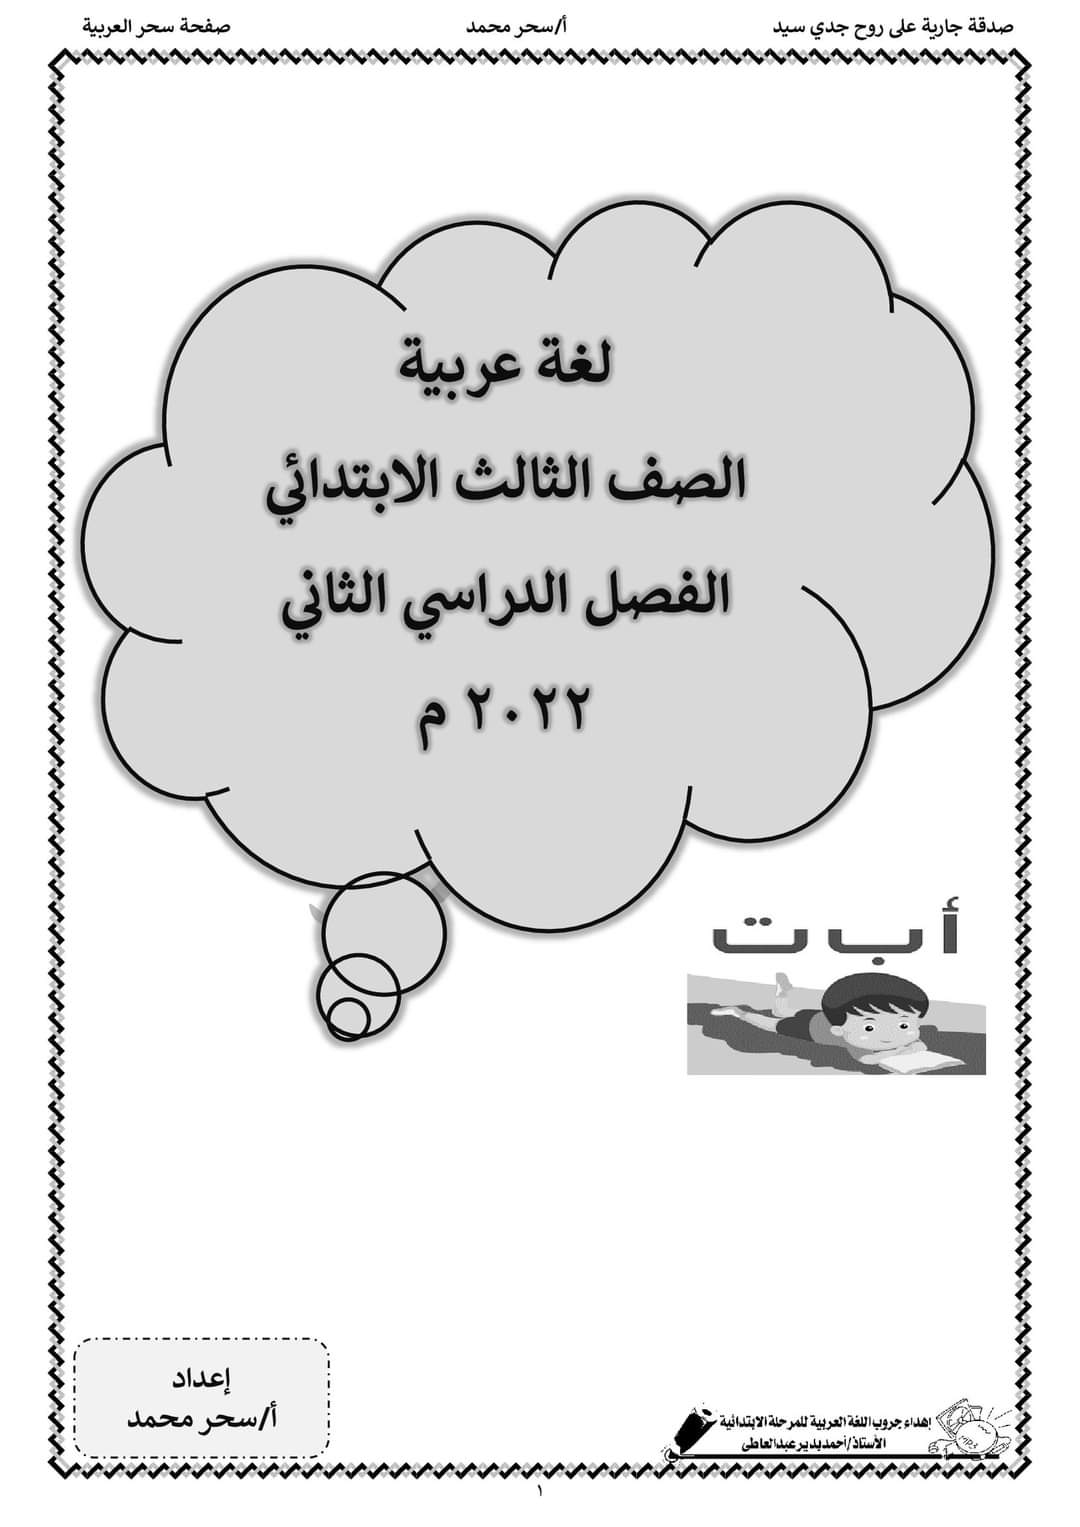 تحميل بوكليت عربي الصف الثالث الابتدائي الترم الثاني - بوكليت عربي تالتة ابتدائي